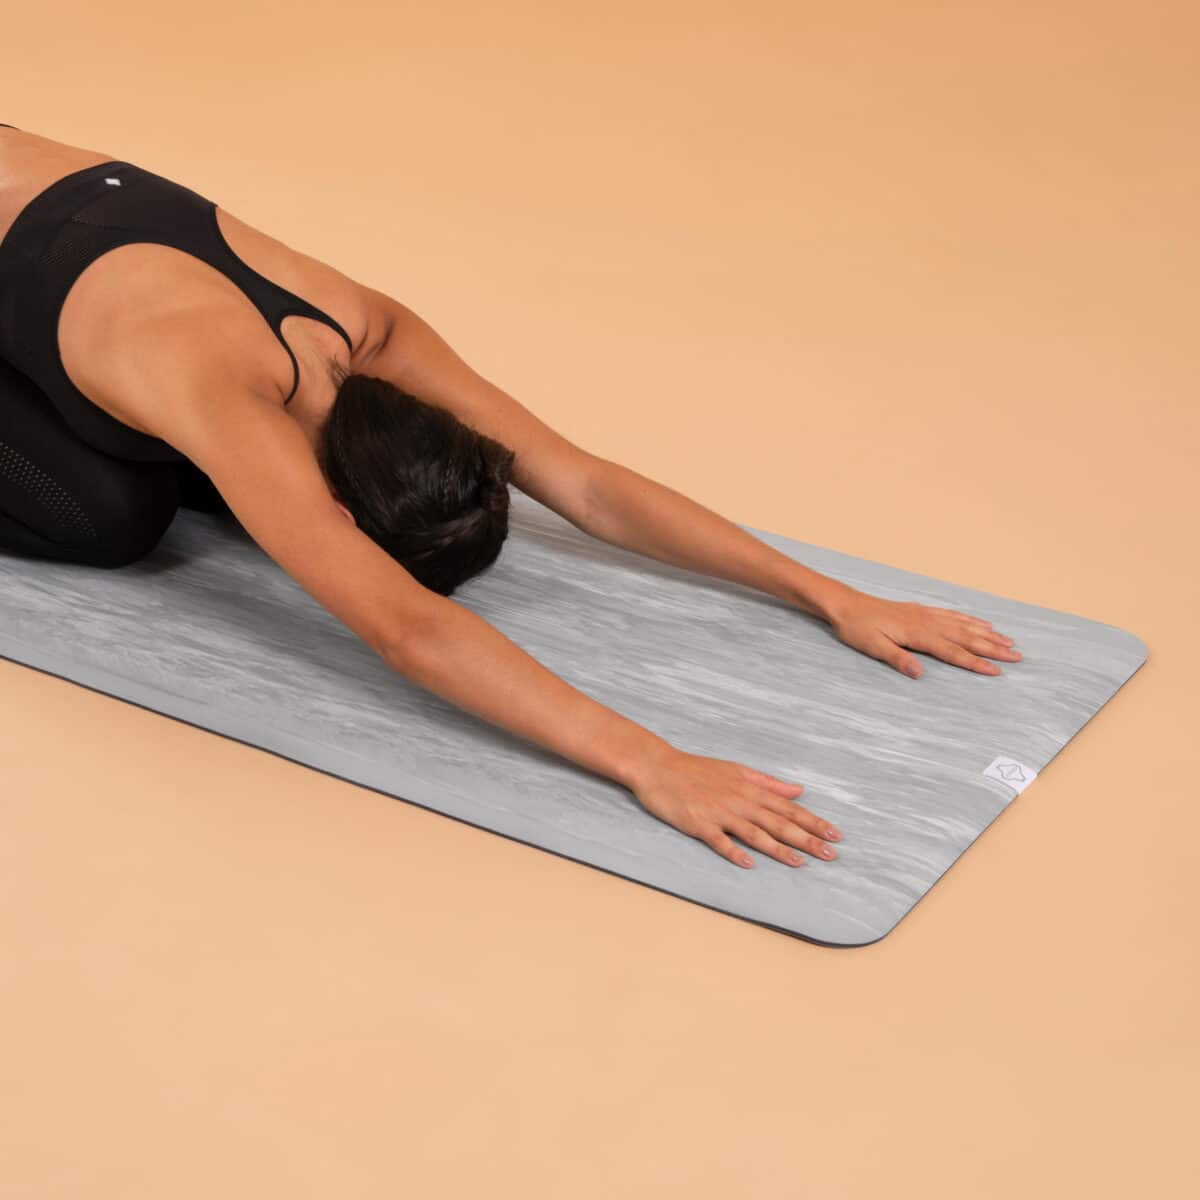 Image du site Décathlon. L'allié de votre pratique : Un tapis de yoga offrant un excellent rapport qualité/prix et une adhérence inégalée.
